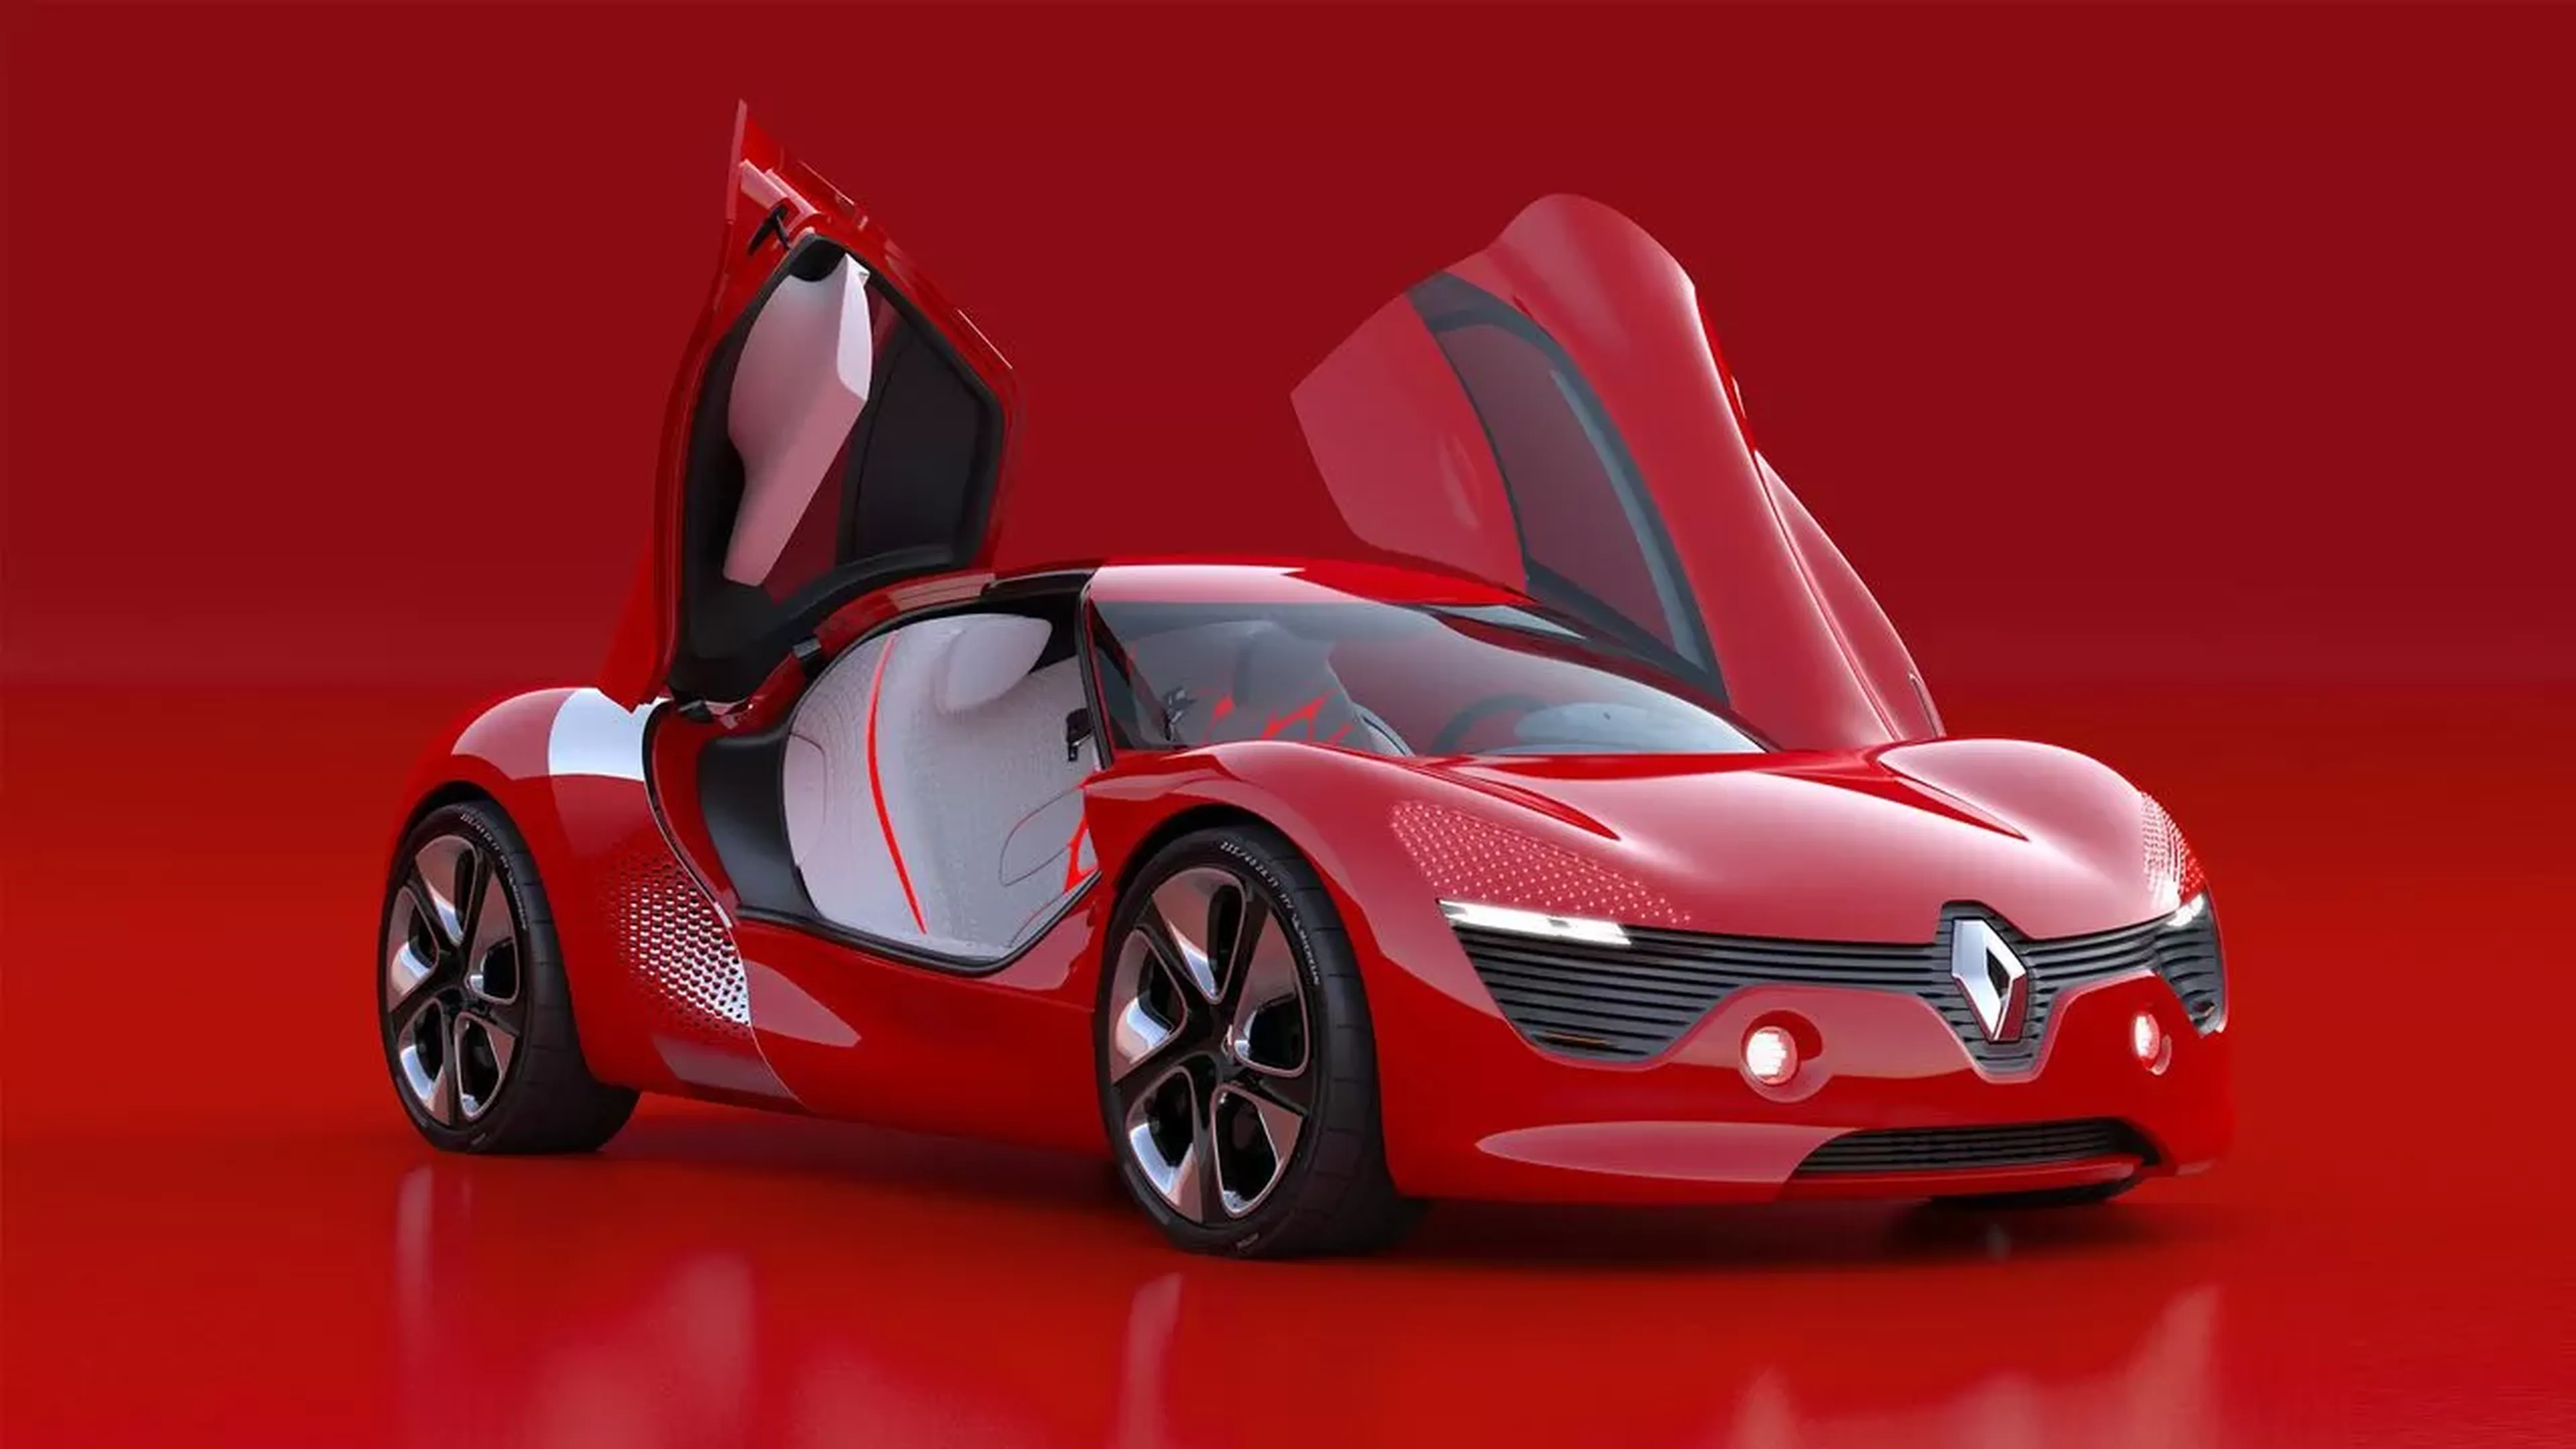 Renault Dezir Concept, en el que se inspiró el R.S 01.